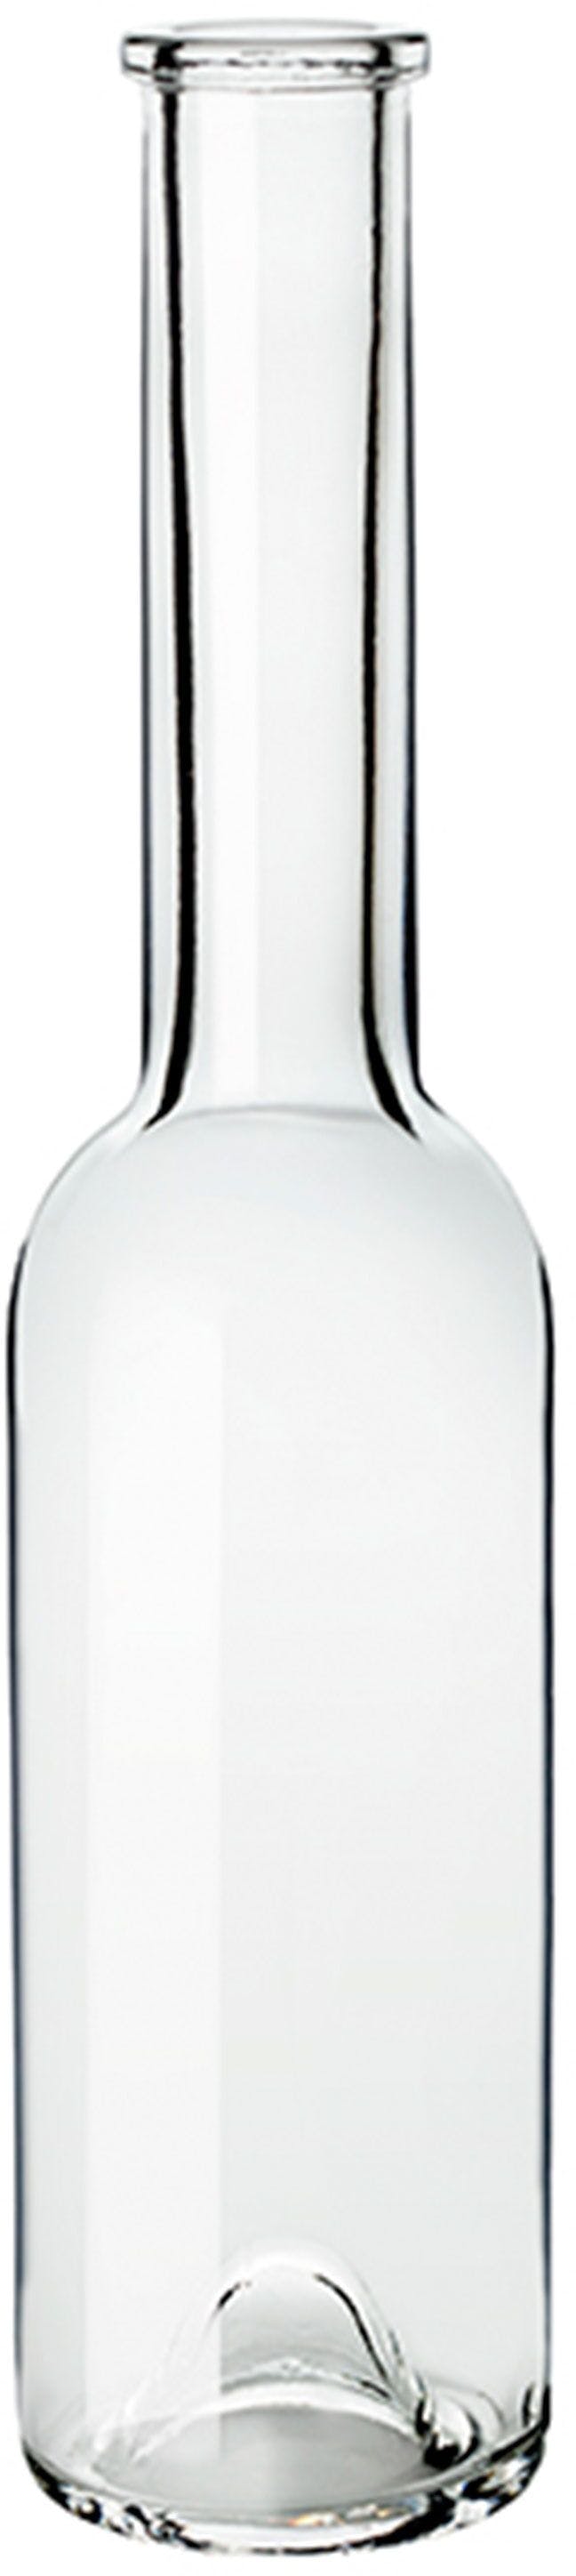 Flasche SINFONIA  OPERA 250 ml BG-Korken